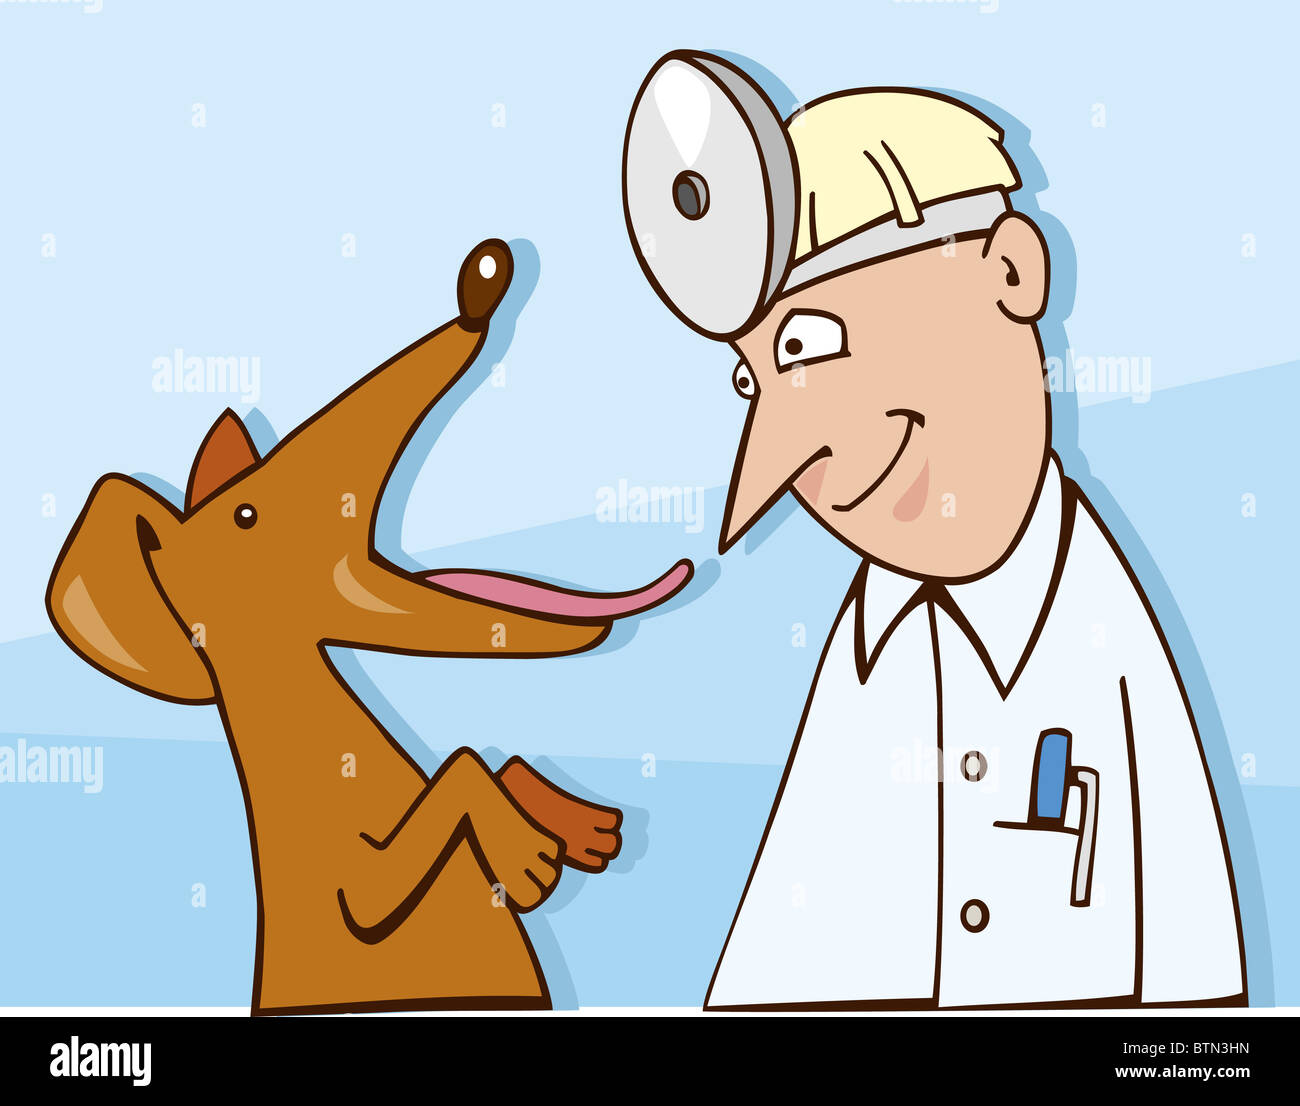 Ilustración de dibujos animados de perro en veterinario Fotografía de stock  - Alamy